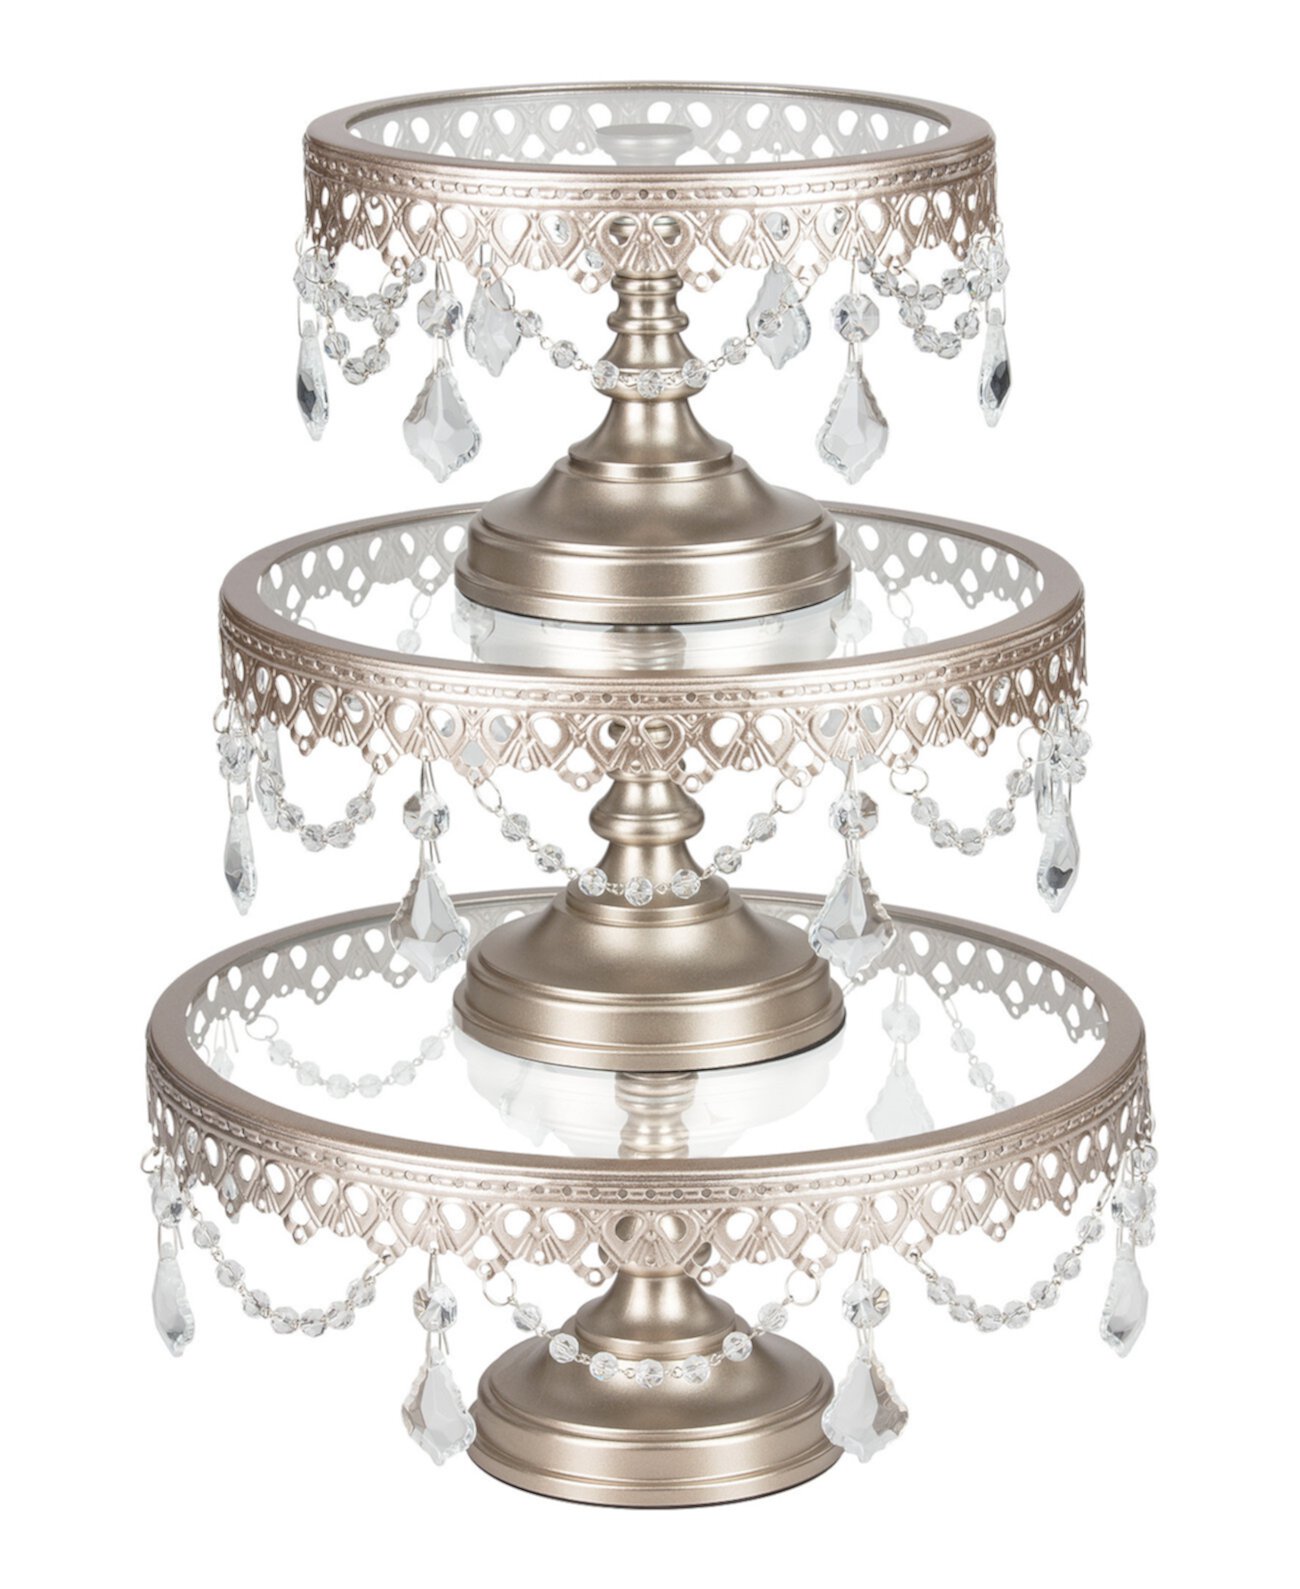 Подставка для торта Victoria, украшенная кристаллами, со стеклянными тарелками, набор из 3 шт. Amalfi